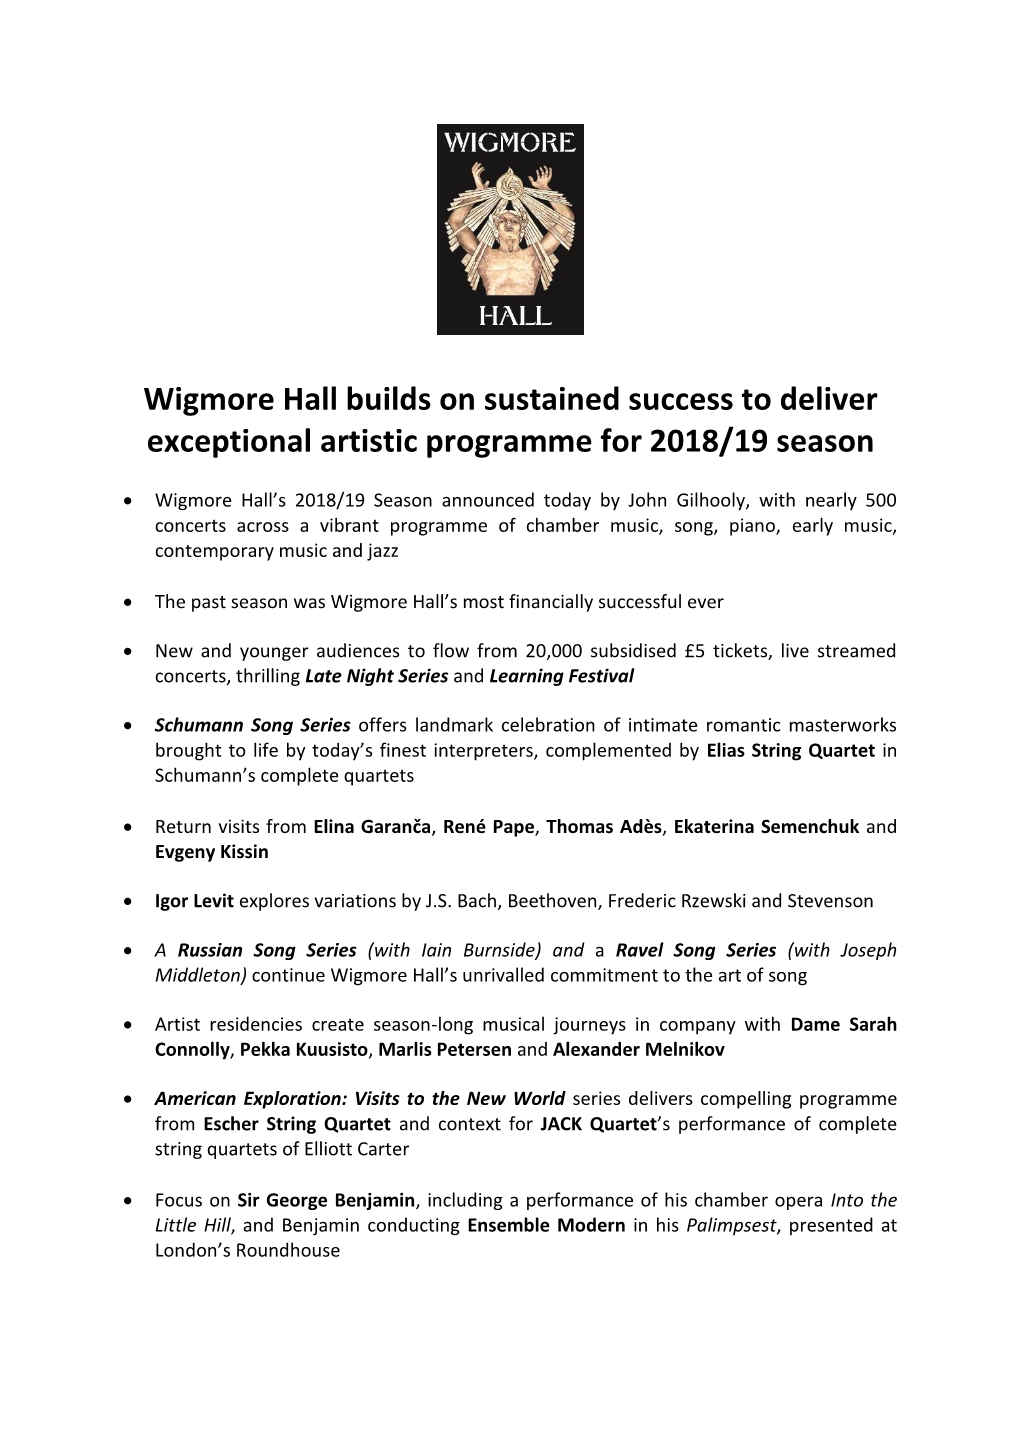 Wigmore Hall 2018/19 Season Preview Press Release